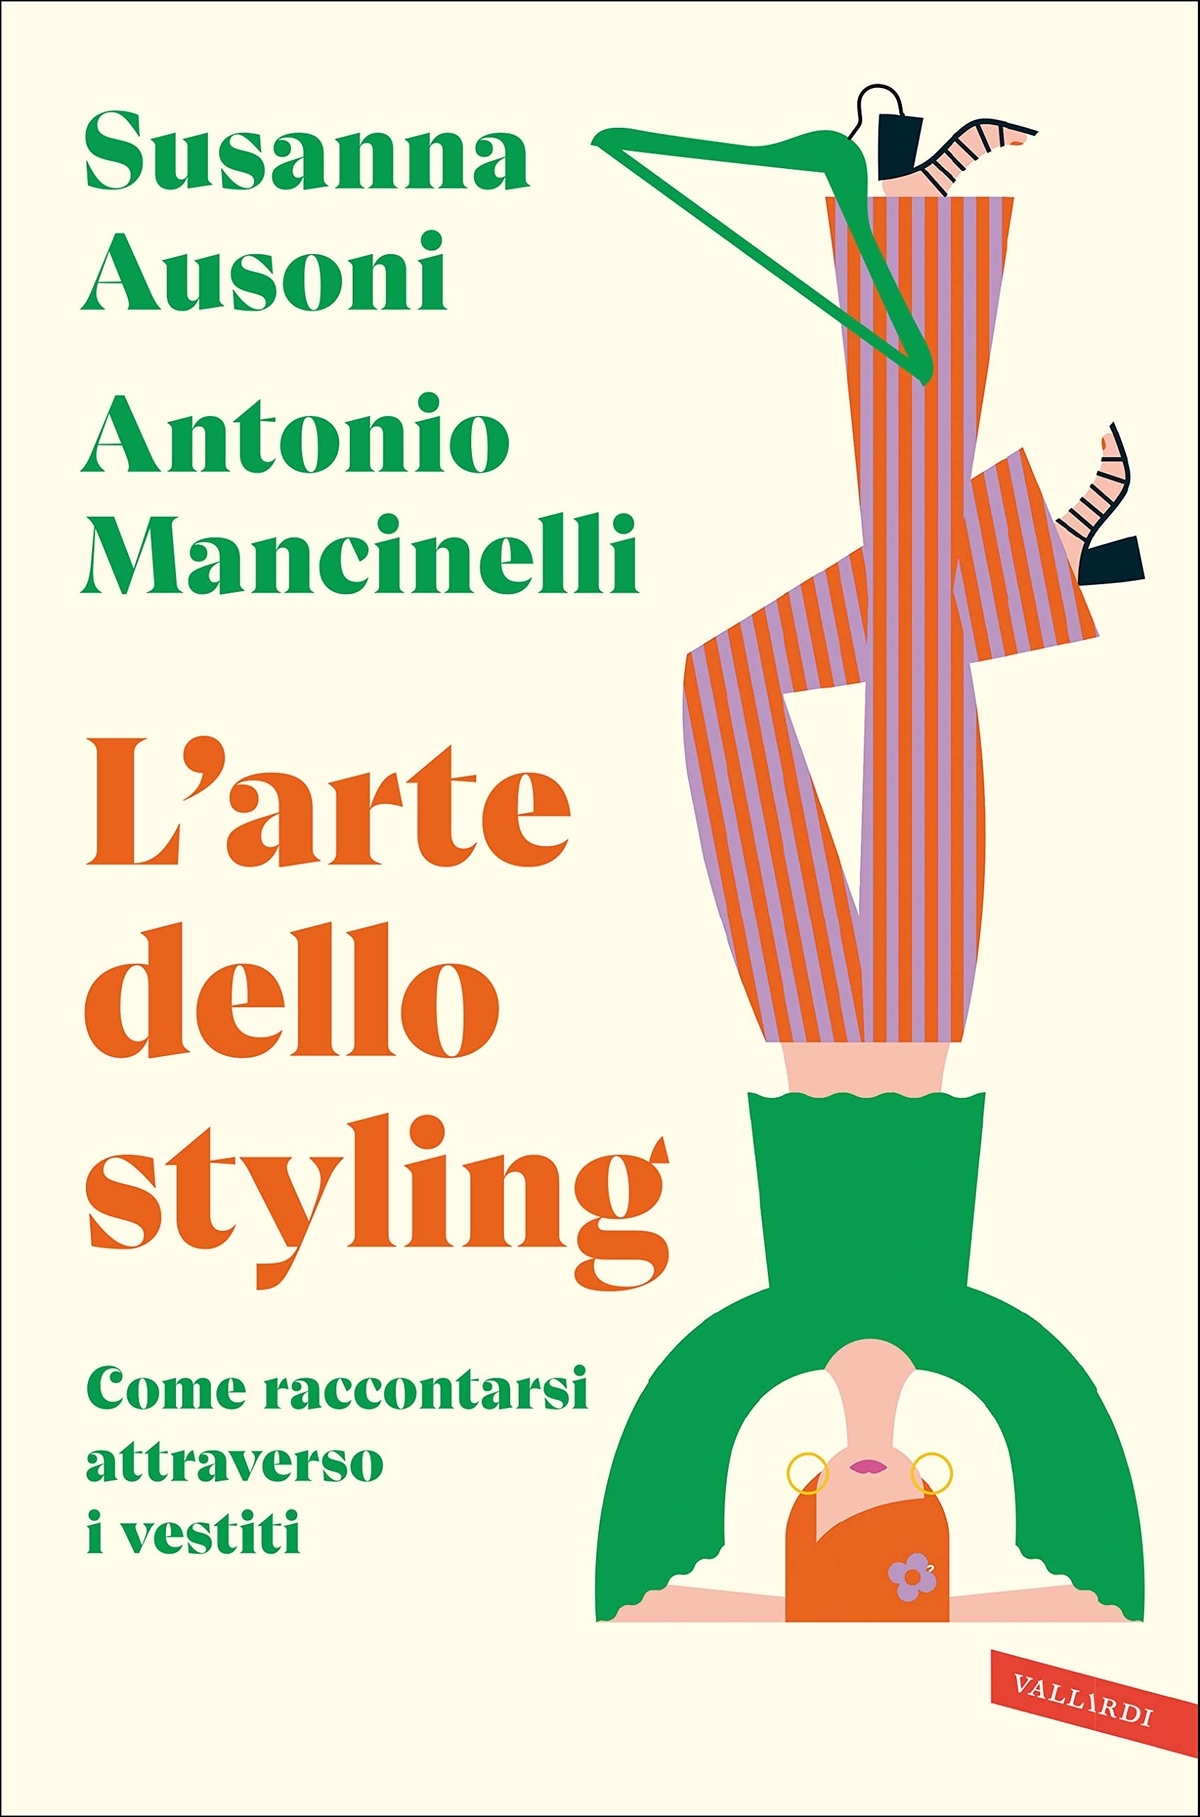 Susanna Ausoni & Antonio Mancinelli – L'arte dello styling (Vallardi, Milano 2022)